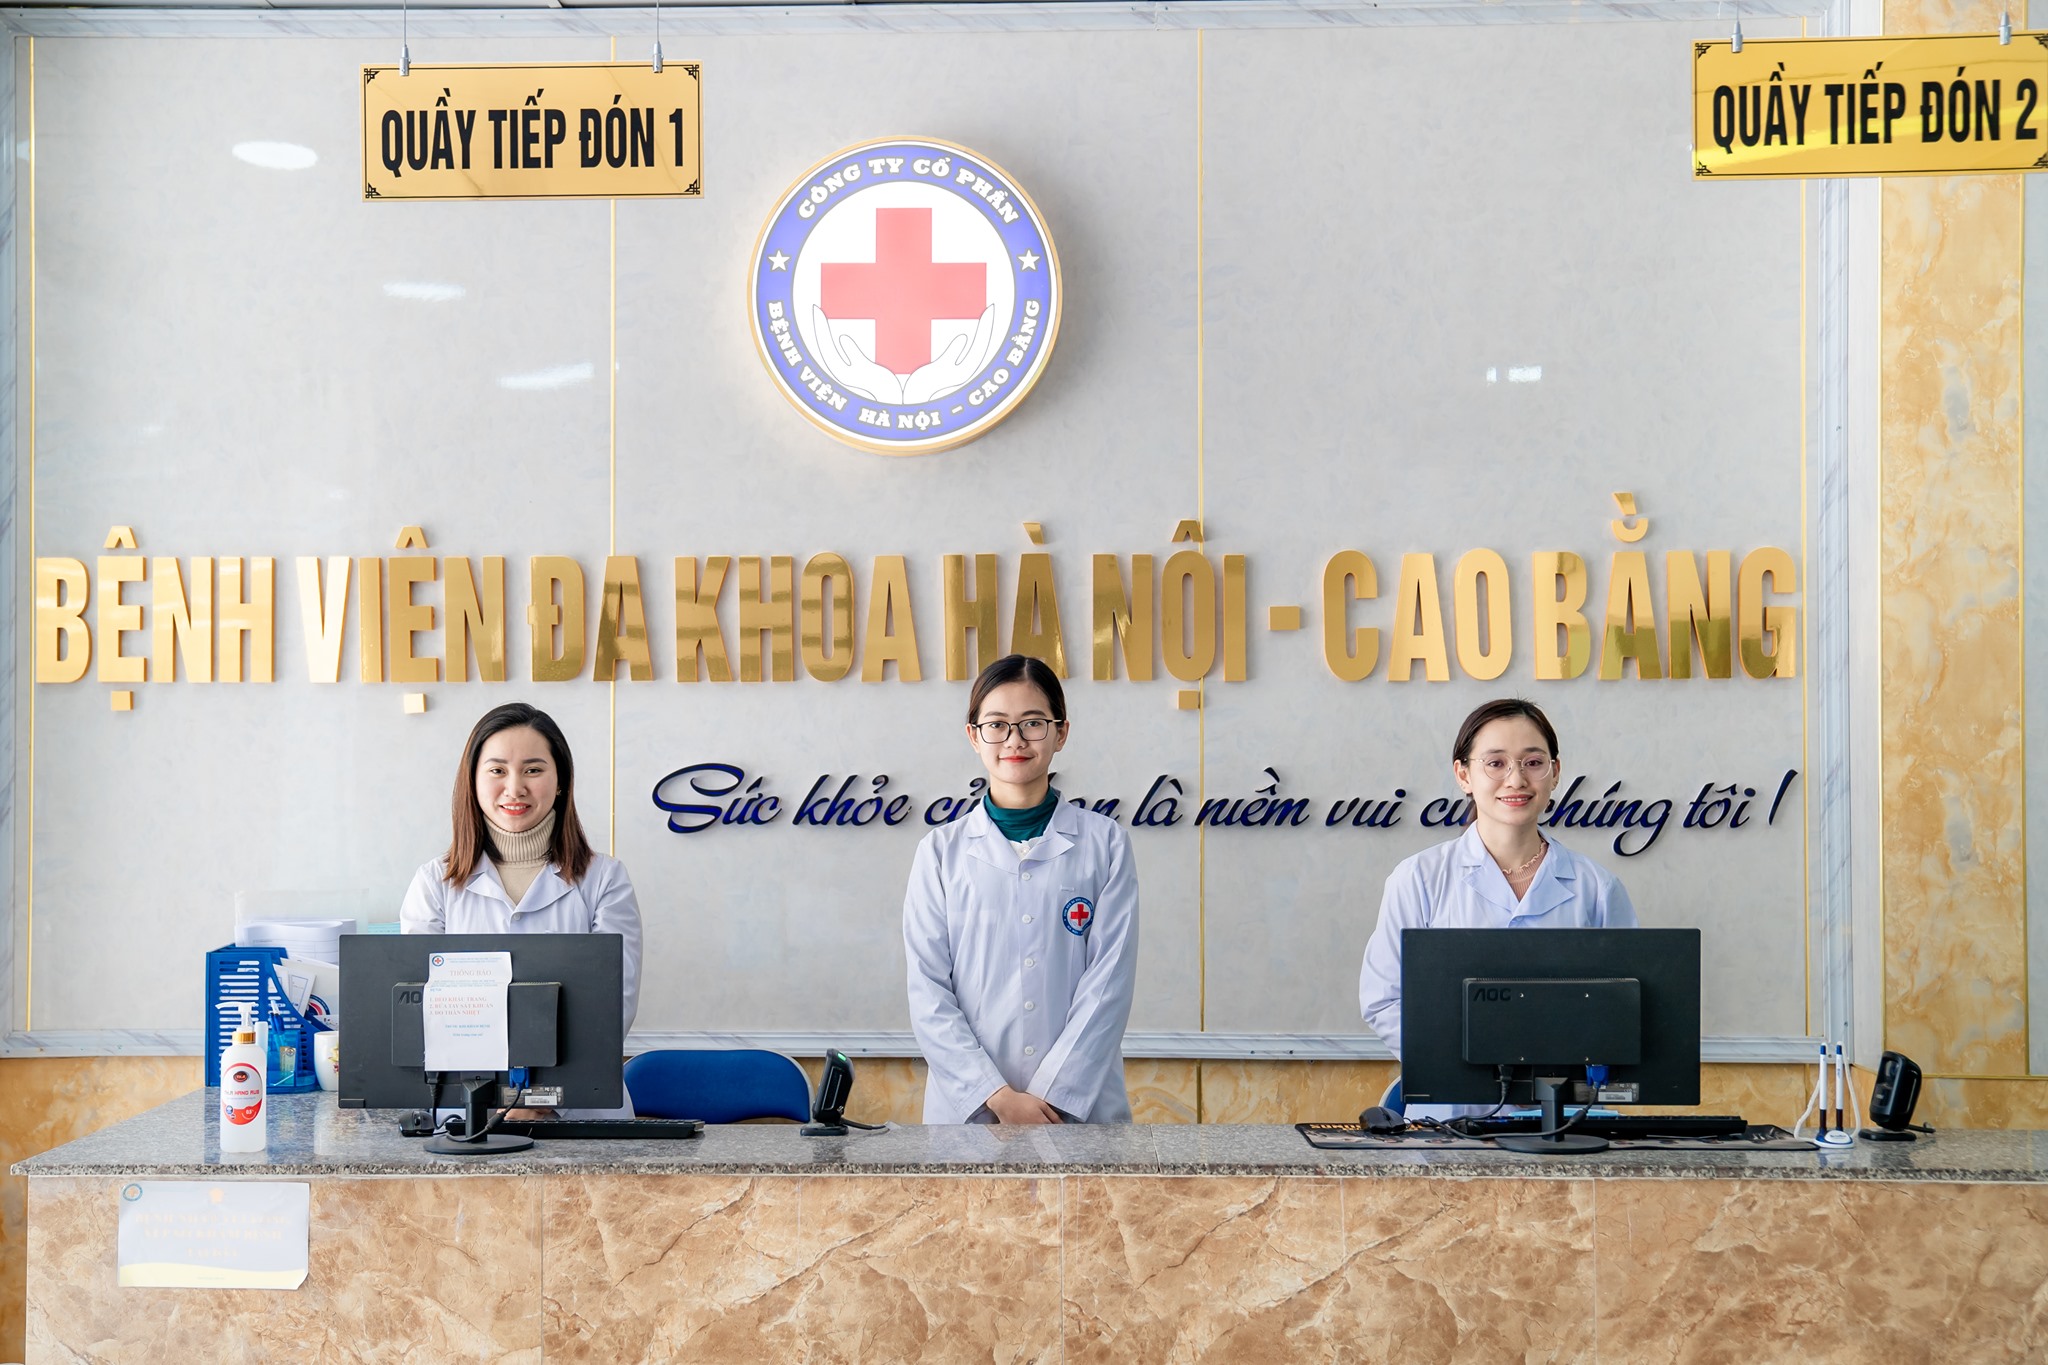 Phòng khám nha khoa Hà Nội – Cao Bằng